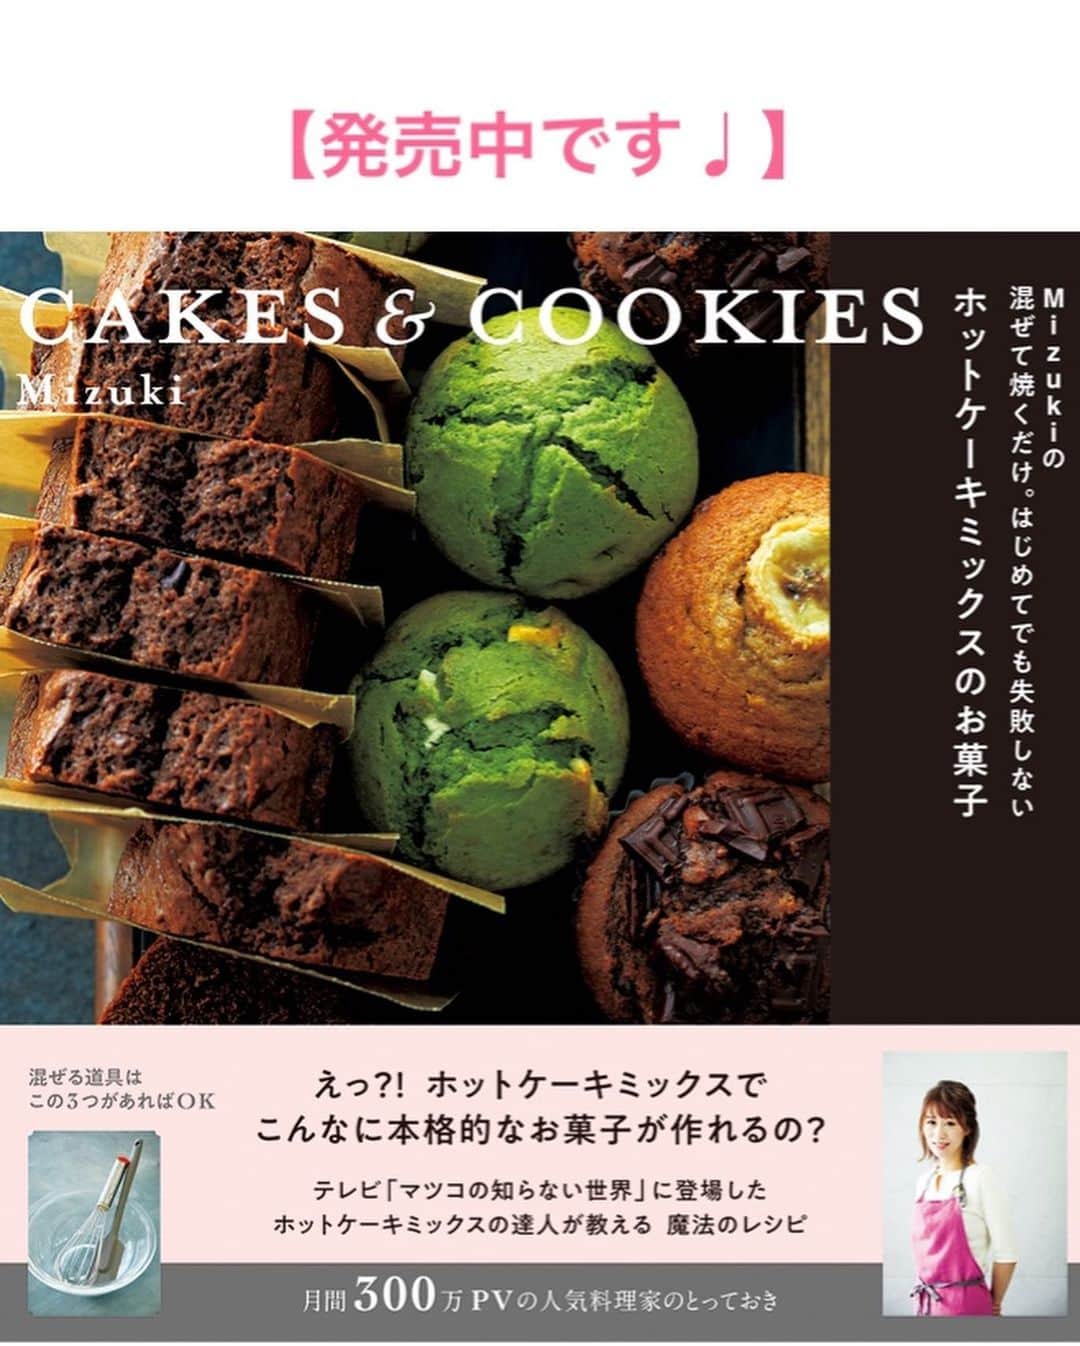 Mizuki【料理ブロガー・簡単レシピ】さんのインスタグラム写真 - (Mizuki【料理ブロガー・簡単レシピ】Instagram)「・﻿ 【#レシピ 】ーーーーーーー﻿ ホットケーキミックスで！﻿ ♡りんごのマフィン♡﻿ ーーーーーーーーーーーーー﻿ ﻿ ﻿ おはようございます(*^^*)﻿ ﻿ まずレシピの前に•••﻿ 新刊をお手に取っていただき﻿ 誠にありがとうございます🥺💗﻿ ほんとに私達の予想を遥かに上回り﻿ Amazon、楽天ブックス共に﻿ 初日にカートが落ちてしまいました😭﻿ 探して下さった方、誠に申し訳ございません(泣)﻿ 入荷次第お知らせさせていただきますので﻿ どうぞよろしくお願い致しますm(_ _)m﻿ (リアル書店さんにはまだ在庫がございます)﻿ ﻿ ﻿ ﻿ ﻿ ﻿ さて、レシピに参ります🧁﻿ ﻿ 今日はホケミスイーツ♡﻿ 秋にぴったりのりんごマフィンを﻿ ご紹介させていただきます(*^^*)﻿ ﻿ 混ぜるだけの生地に﻿ ゴロっと大ぶりのりんごをのせて﻿ 見た目も可愛く仕上げました♡﻿ ただのせるだけでも火が入り﻿ ジューシーな食感が味わえますよ♩﻿ ﻿ バターなしでとってもお手軽なので﻿ よかったらお試し下さいね(*´艸`)﻿ ﻿ ﻿ ﻿ ＿＿＿＿＿＿＿＿＿＿＿＿＿＿＿＿＿＿＿＿﻿ 【マフィン型1台(6個)分】﻿ りんご...小1個﻿ ●卵...1個﻿ ●砂糖...大3﻿ ●牛乳...70ml﻿ ●サラダ油...60g﻿ ●レモン汁...小1﻿ ホットケーキミックス...150g﻿ (好みで)シナモンパウダー...適量﻿ ﻿ (準備)型にグラシンカップを敷く。オーブンを180度に予熱する。﻿ 1.りんごは皮を剥いて6等分に切り、それぞれ縦4本ずつ包丁で切り込みを入れる。﻿ 2.ボウルに●を入れ、泡立て器でよく混ぜる。続けてホットケーキミックスも加えて更に混ぜる。﻿ 3.型に注ぎ、りんごを一切れずつのせ、りんごの上に砂糖(分量外)をふたつまみずつ振りかける。﻿ 4.予熱したオーブンで20分焼き、好みでシナモンを振る。﻿ ￣￣￣￣￣￣￣￣￣￣￣￣￣￣￣￣￣￣￣￣﻿ ﻿ ﻿ ﻿ 《ポイント》﻿ ♦︎りんごは型に収まるサイズに切って下さい♩﻿ ♦︎ホットケーキミックスを加えたら混ぜ過ぎず、粉っぽさがなくなったらストップ！﻿ ♦︎バターで作るタイプのりんごマフィンは【著書・ホットケーキミックスのお菓子】に掲載しています♩﻿ ﻿ ﻿ ﻿ ﻿ ﻿ ﻿ ﻿ ﻿ ⭐️発売中です⭐️﻿ _____________________________________﻿ \15分でいただきます/﻿ 📕#Mizukiの2品献立 📕﻿ (9月24日発売・マガジンハウス)﻿ ￣￣￣￣￣￣￣￣￣￣￣￣￣￣￣￣￣﻿ ﻿ 忙しい私たちには﻿ 2品くらいがちょうどいい！﻿ 『しんどくない献立、考えました』﻿ ￣￣￣￣￣￣￣￣￣￣￣￣￣￣￣￣﻿ ﻿ ーーーーーPART.1 ーーーーー﻿ 【Mizukiのお墨つき！２品献立ベスト10】﻿ 約15分でできる10献立をご紹介！﻿ メインは全部フライパン、副菜はレンチンor混ぜるだけ♡﻿ ﻿ ーーーーーPART.2 ーーーーー﻿ 【フライパンひとつ！今夜のメインおかず】﻿ 献立の主役になる肉や魚のおかず50品！﻿ Part3の副菜と組み合わせれば﻿ 献立のバリエーションが広がりますよ♩﻿ ﻿ ーーーーー PART.3 ーーーーー﻿ 【合間に作れる！ 野菜別かんたん副菜】﻿ レンチンor和えるだけの副菜レシピを﻿ 素材別にたっぷり収録♩﻿ ﻿ ーーーーー番外編ーーーーー﻿ 【ひとつで満足！ご飯＆麺】﻿ 【具だくさん！おかずスープ】﻿ 【オーブンいらずのおやつレシピ】﻿ ￣￣￣￣￣￣￣￣￣￣￣￣￣￣￣￣￣￣﻿ ハイライトにリンク🔗あります💓﻿ ﻿ ﻿ ﻿ ﻿ ﻿ ￣￣￣￣￣￣￣￣￣￣￣￣￣￣￣￣￣￣﻿ レシピを作って下さった際や﻿ レシピ本についてのご投稿には﻿ タグ付け( @mizuki_31cafe )して﻿ お知らせいただけると嬉しいです😊💕﻿ ﻿ ﻿ ﻿ ﻿ ﻿ #ホットケーキミックス#お菓子#マフィン#りんご#Mizuki#簡単レシピ#時短レシピ#節約レシピ#料理#フーディーテーブル#マカロニメイト#おうちごはん#デリスタグラマー#料理好きな人と繋がりたい#食べ物#料理記録#おうちごはんlover#写真好きな人と繋がりたい#foodpic#cooking#recipe#lin_stagrammer#foodporn#yummy#f52grams#りんごマフィンm」9月25日 7時45分 - mizuki_31cafe